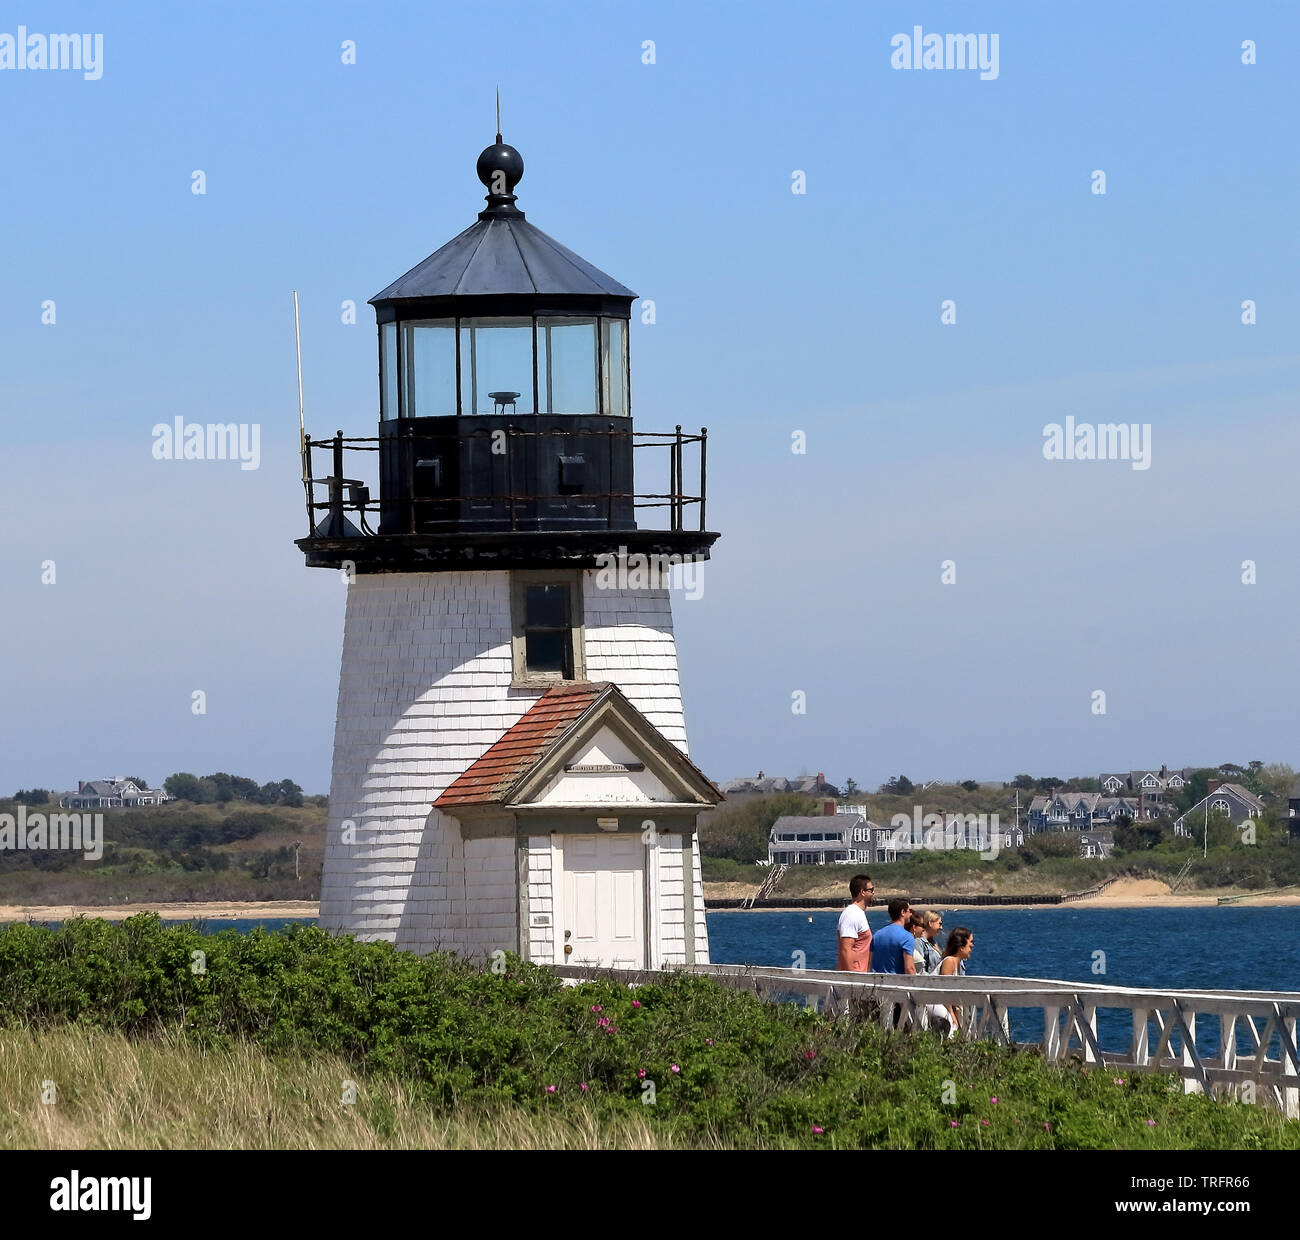 Nantucket, Massachusetts - May 26, 2019: Group of tourists on Brant Point lighthouse on Nantucket Island, Massachusetts Stock Photo